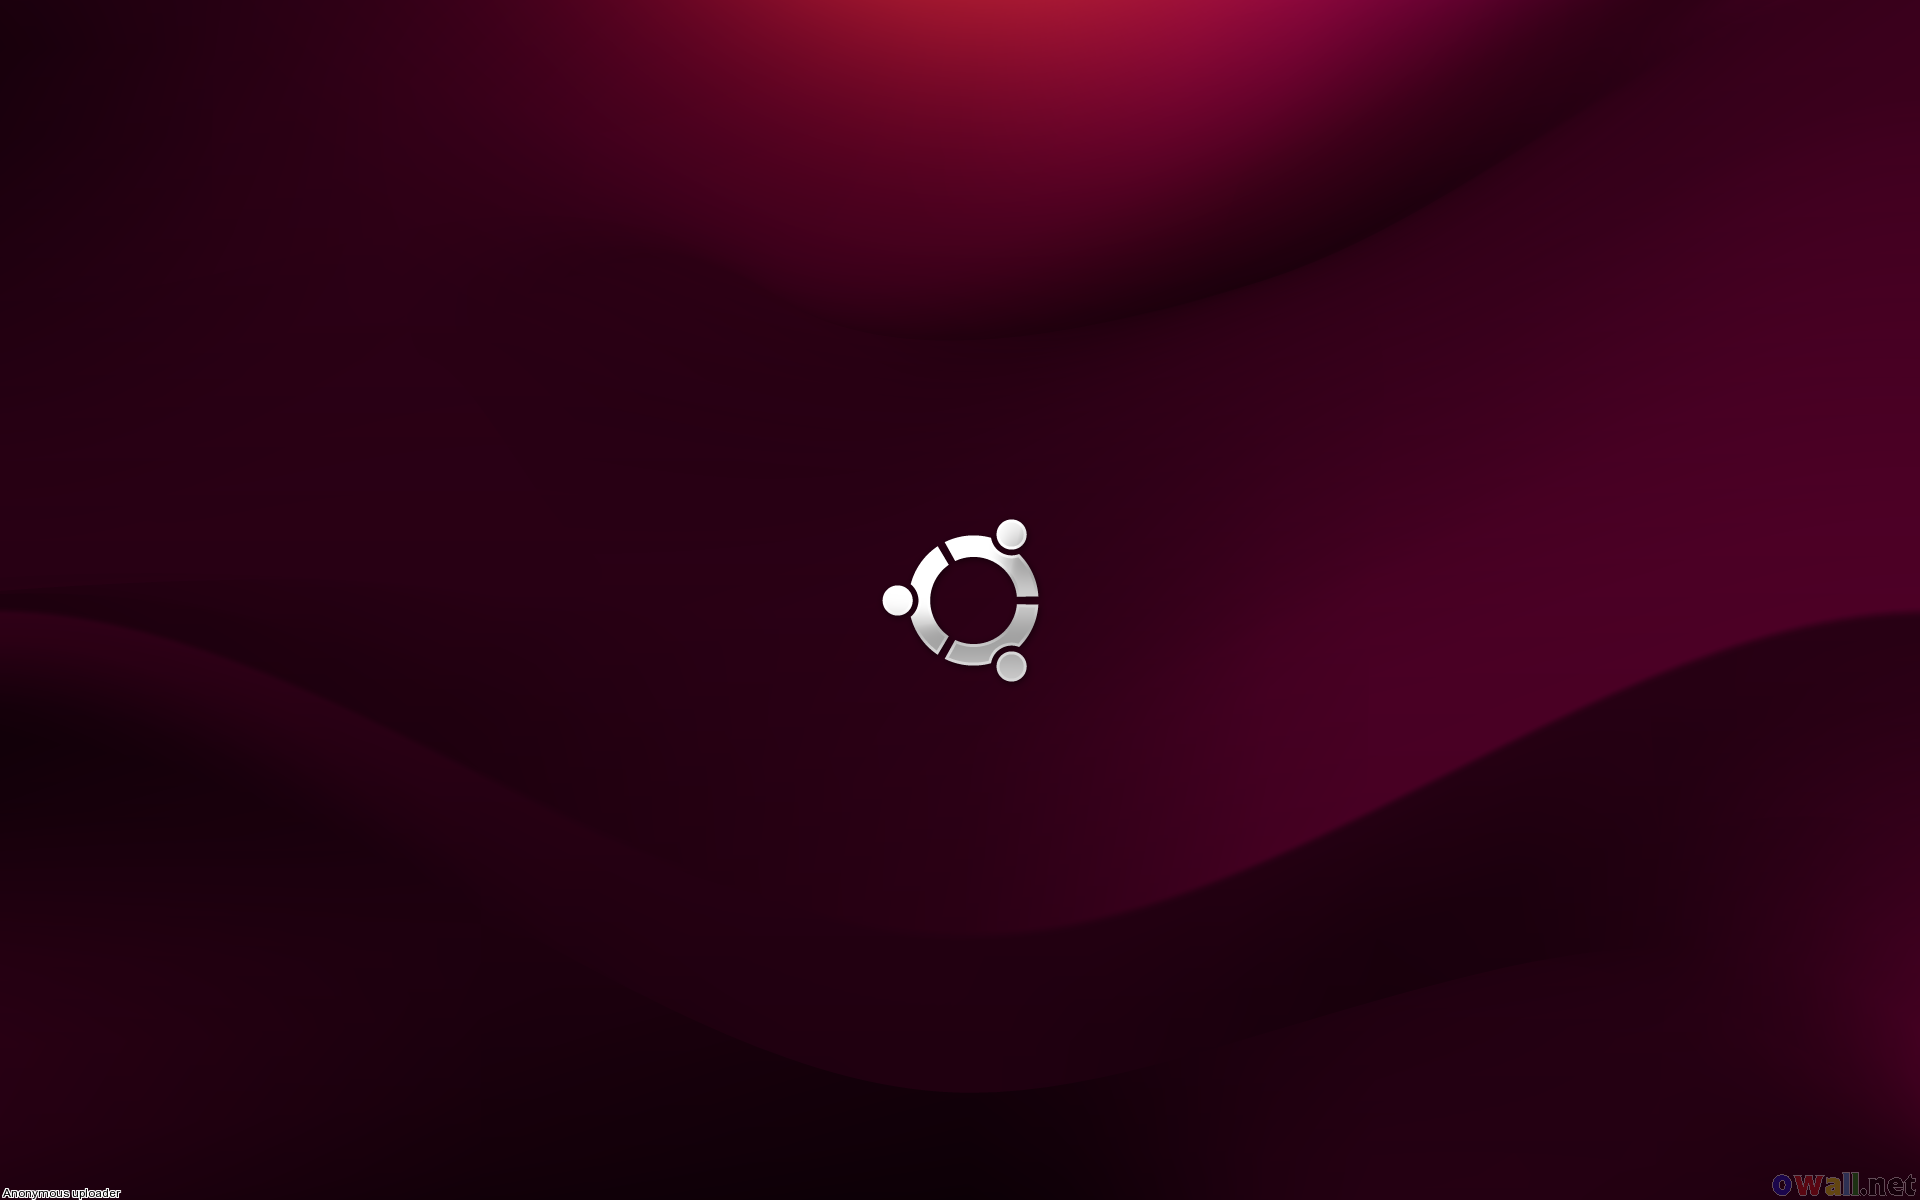 43+] Ubuntu HD Wallpaper 1366x768 on